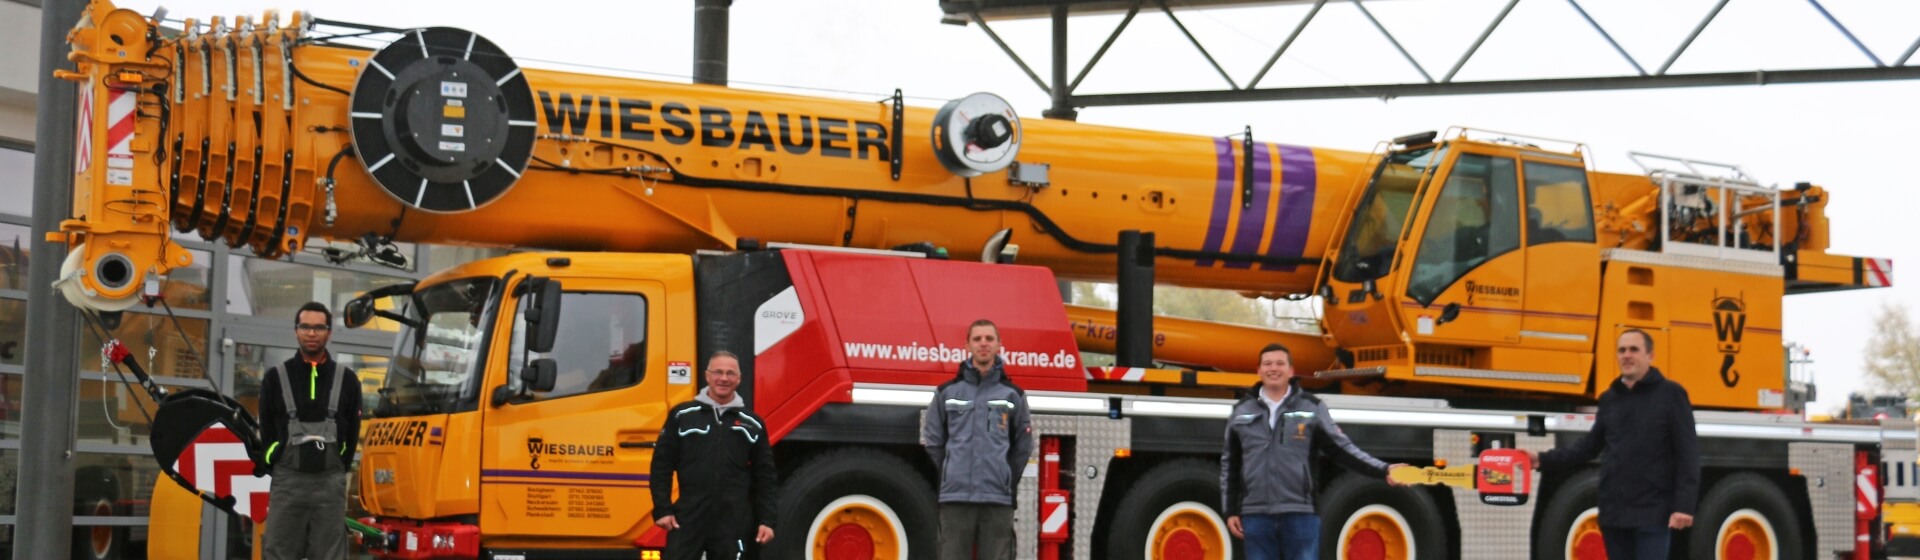 Wiesbauer-strengthens-fleet-with-new-Grove-GMK5150L-all-terrain-crane-1.jpg